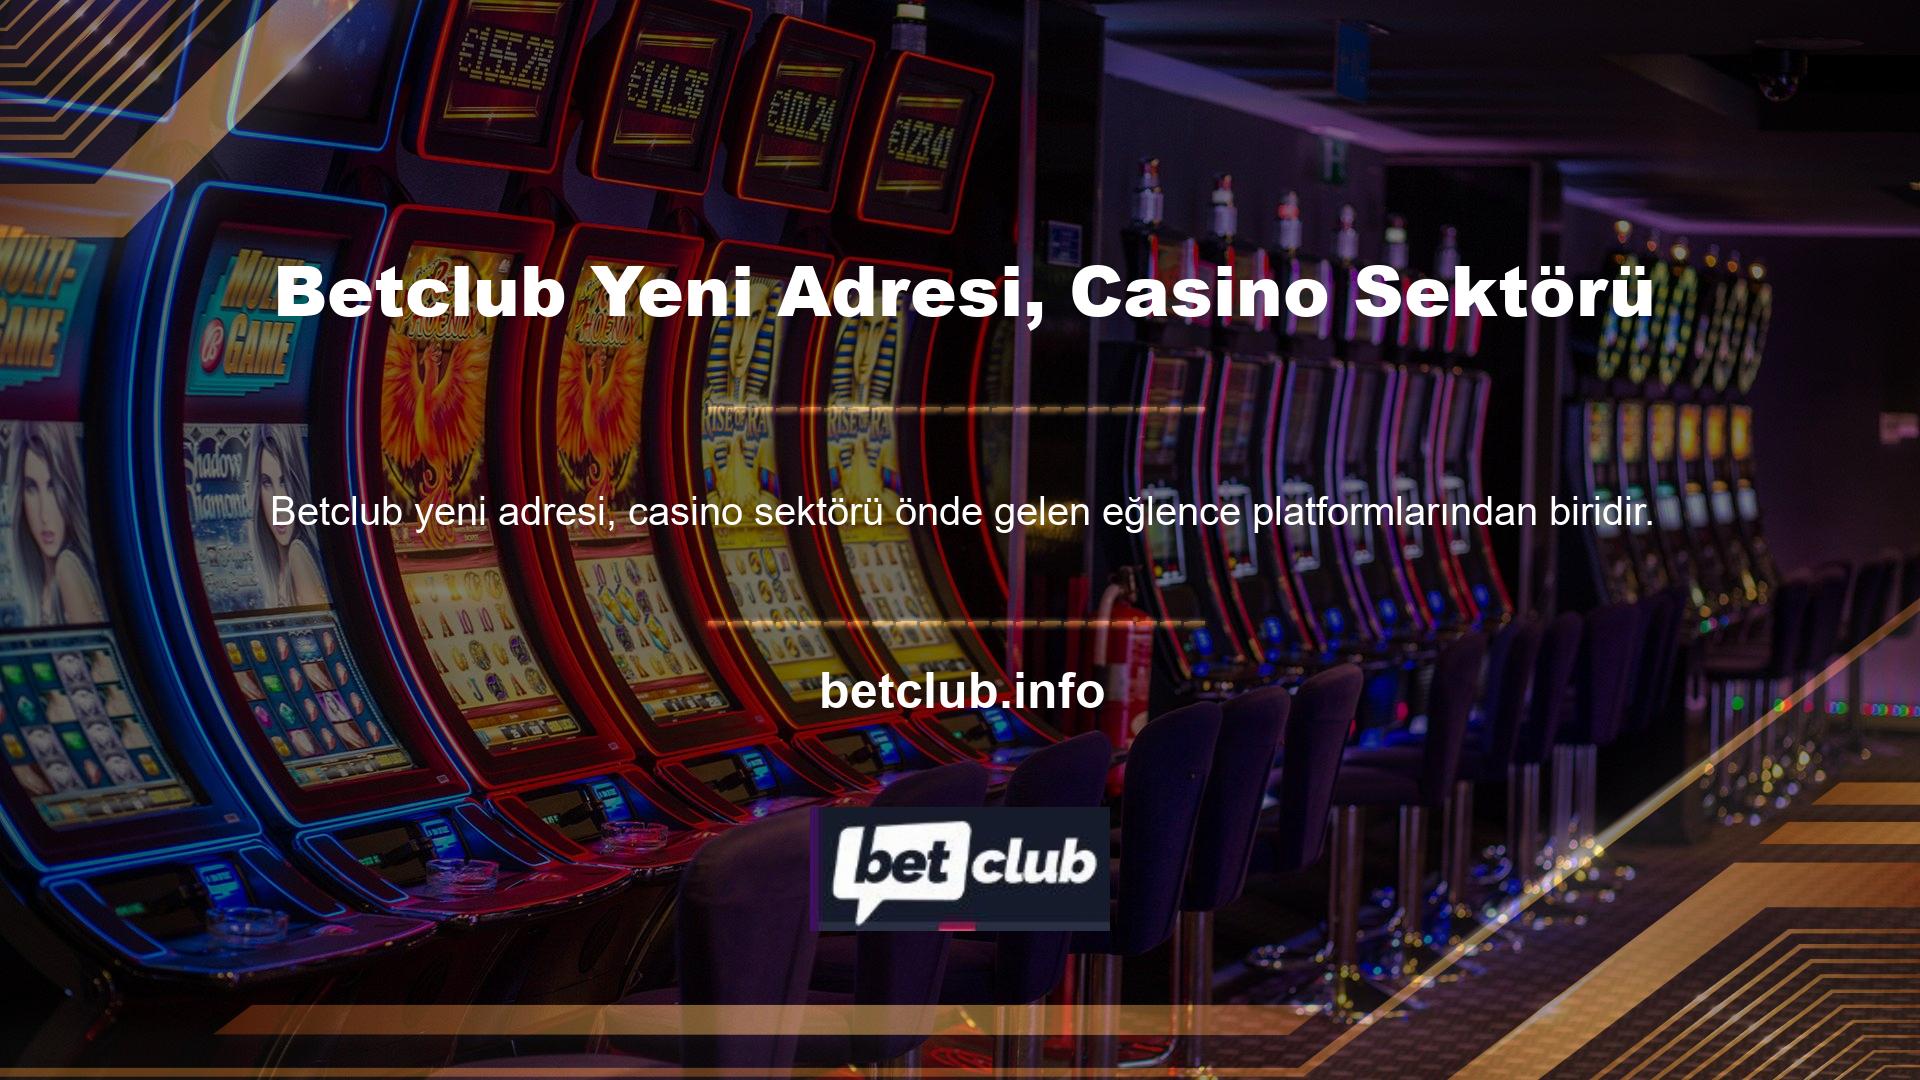 Bahis sitesinin casino bölümünde vakit geçirmek ve özel bonuslar alabilmek için para yatırmanız gerekmektedir